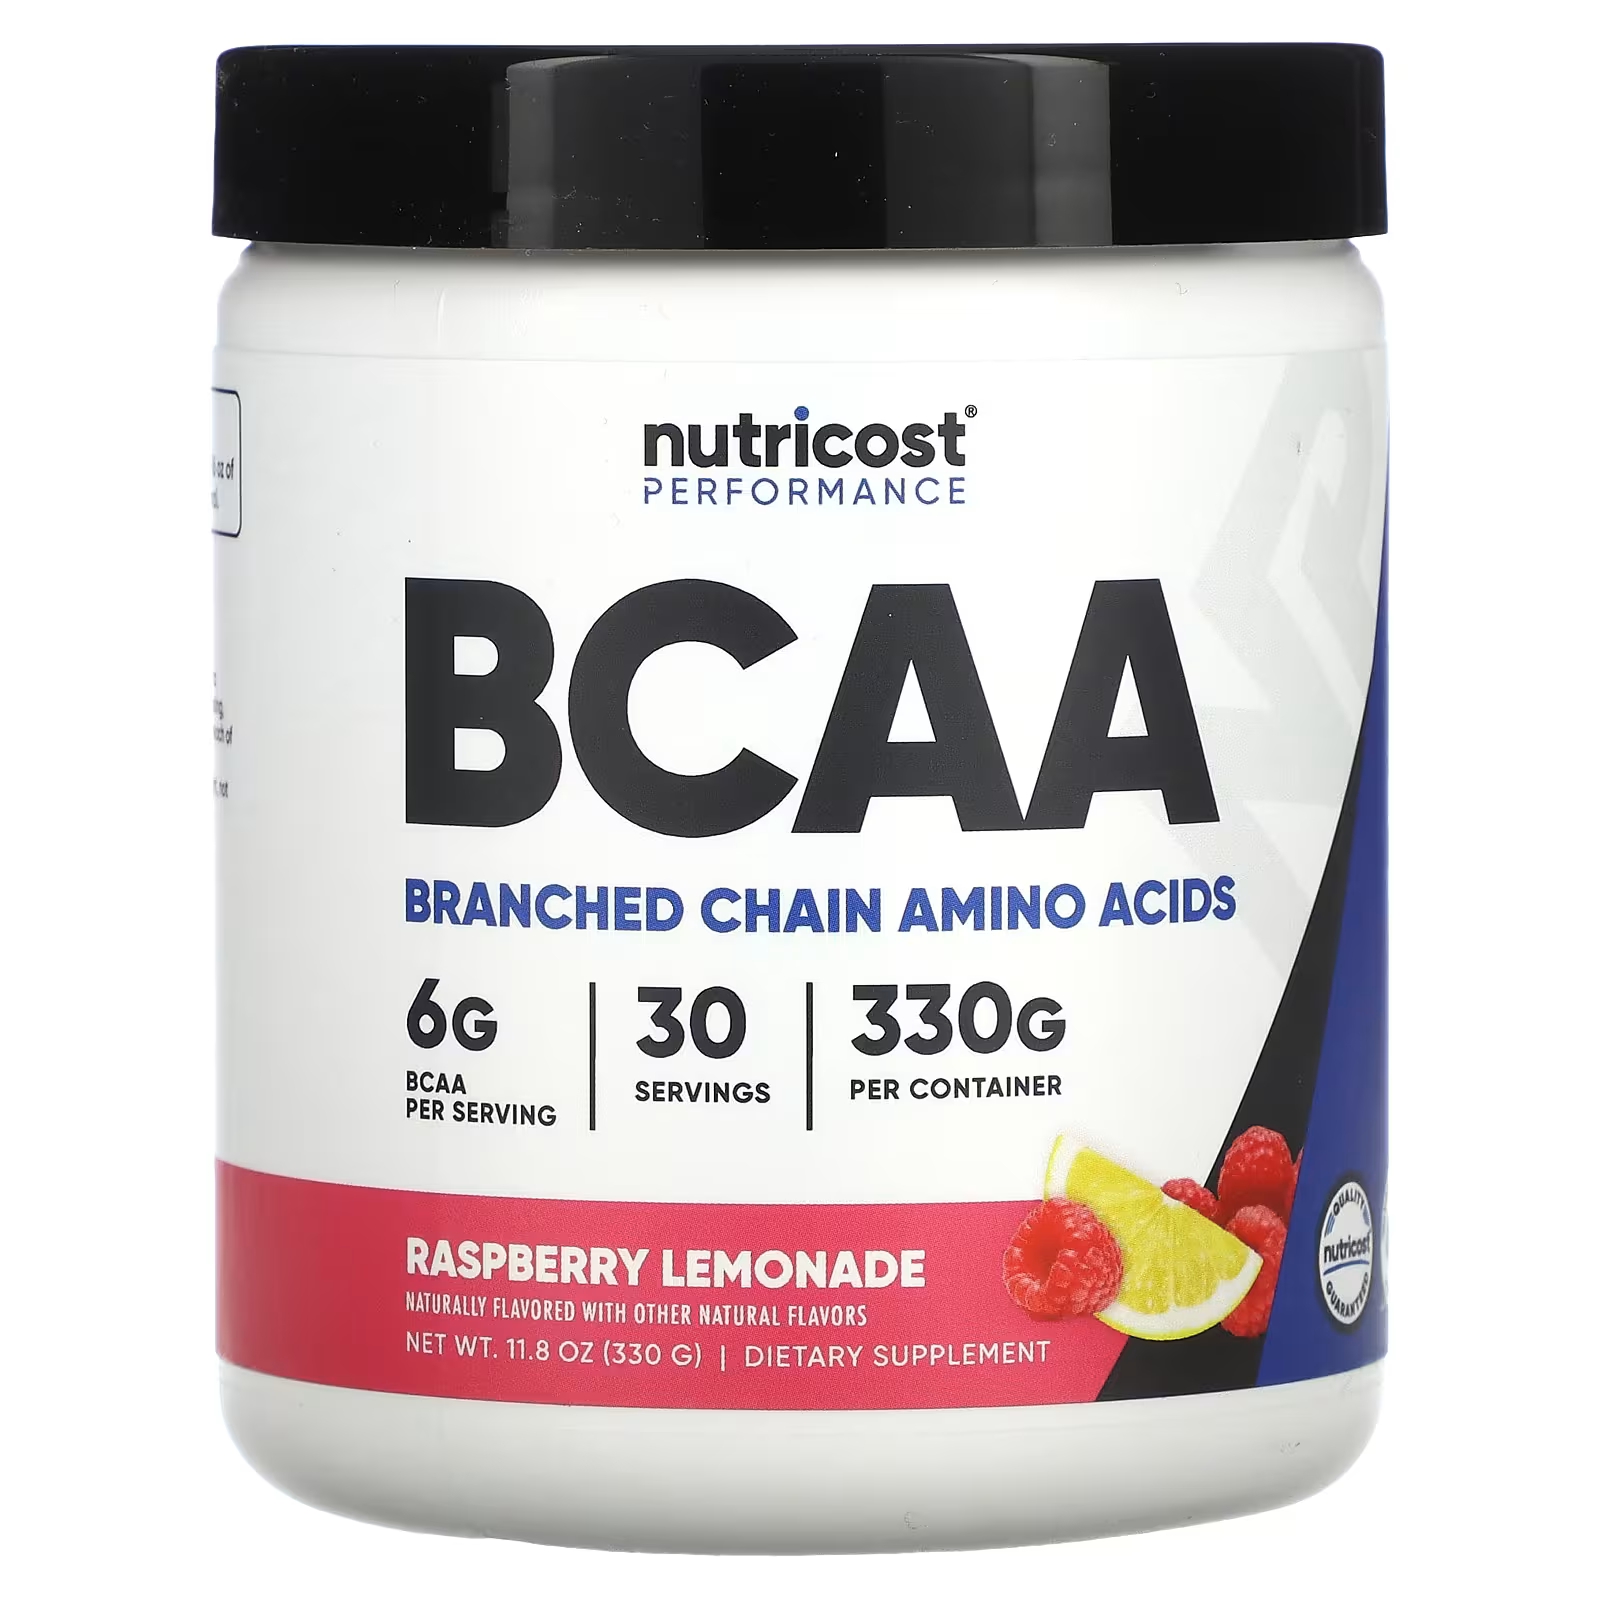 Пищевая добавка Nutricost Performance BCAA с малиновым лимонадом, 330 г life extension аминокислоты с разветвленной цепью 90 капсул